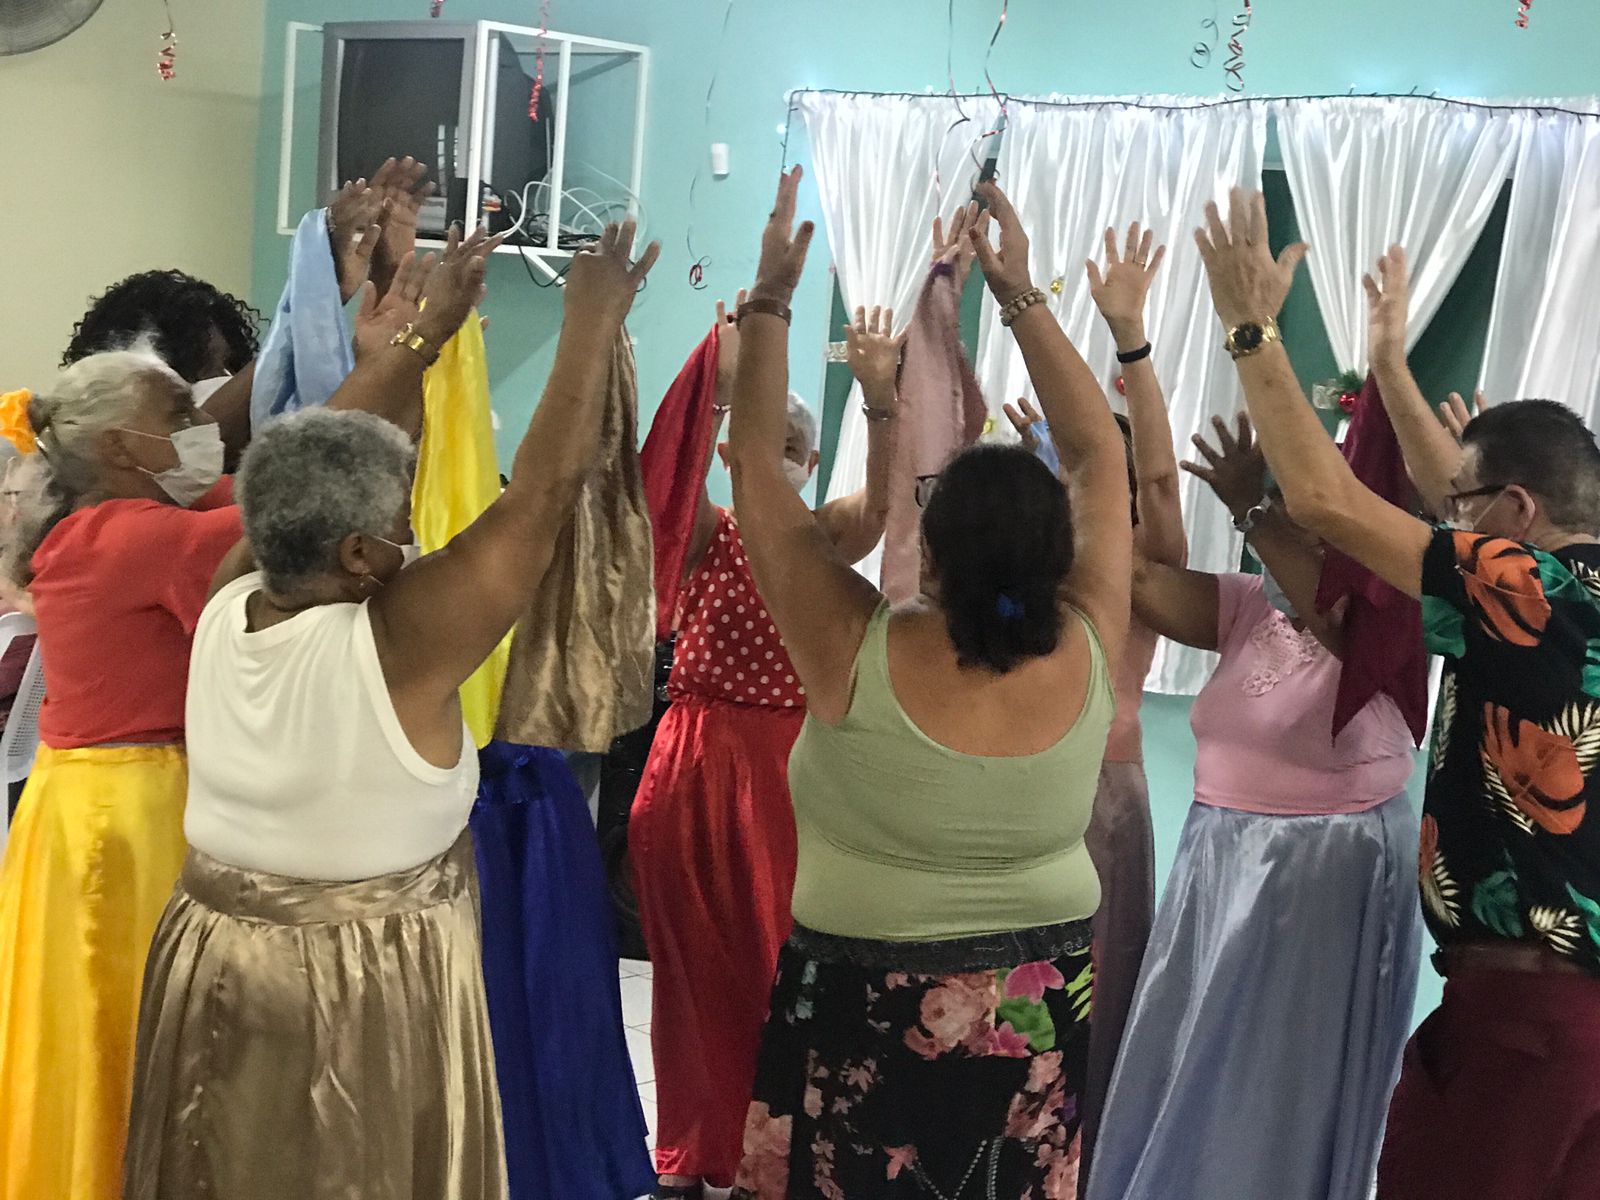  Senhoras com saias coloridas e braços pra cima fazendo a apresentação de dança circular